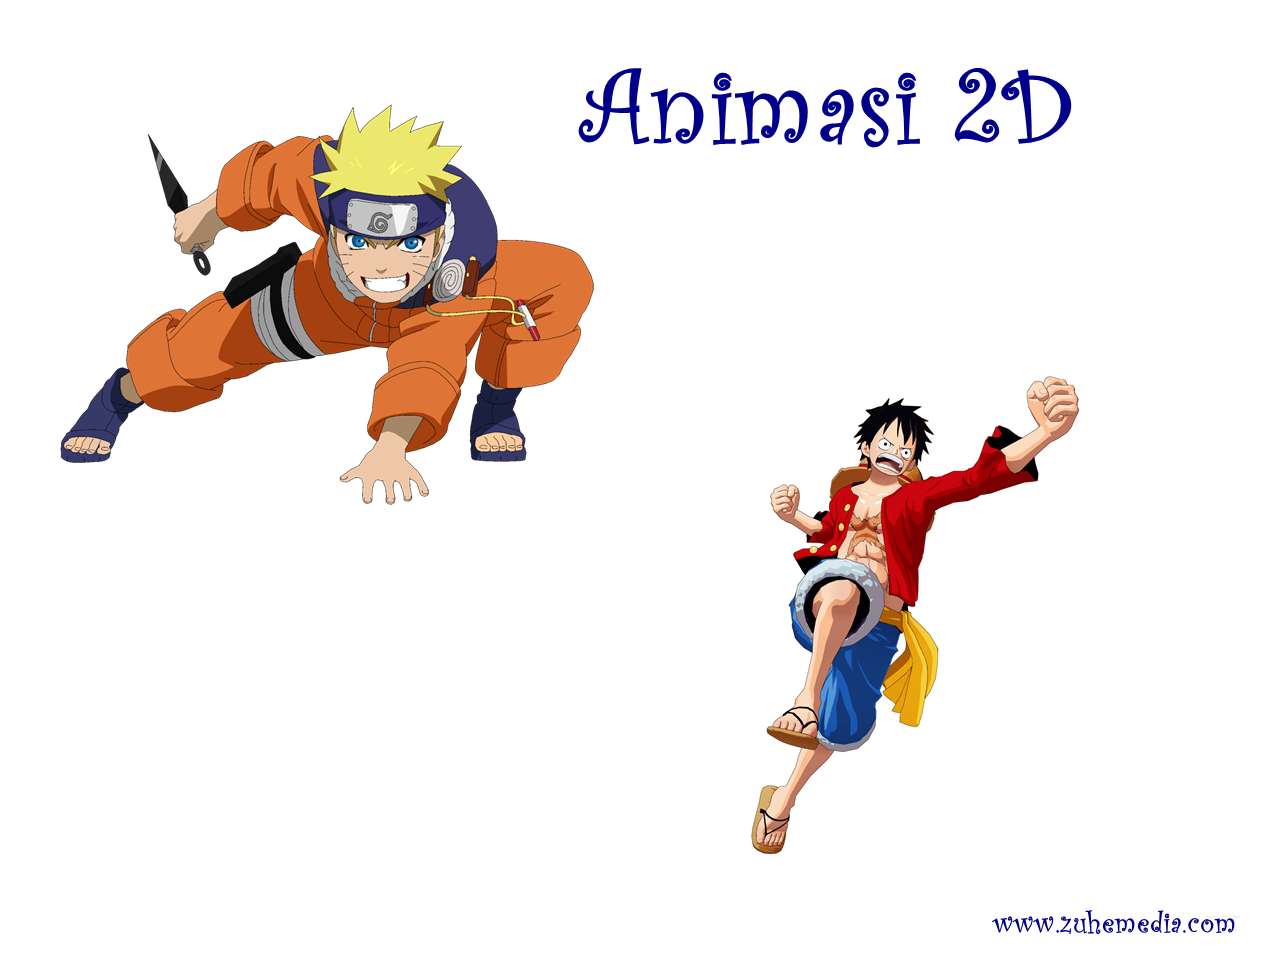 Animasi 2D Dan 3D